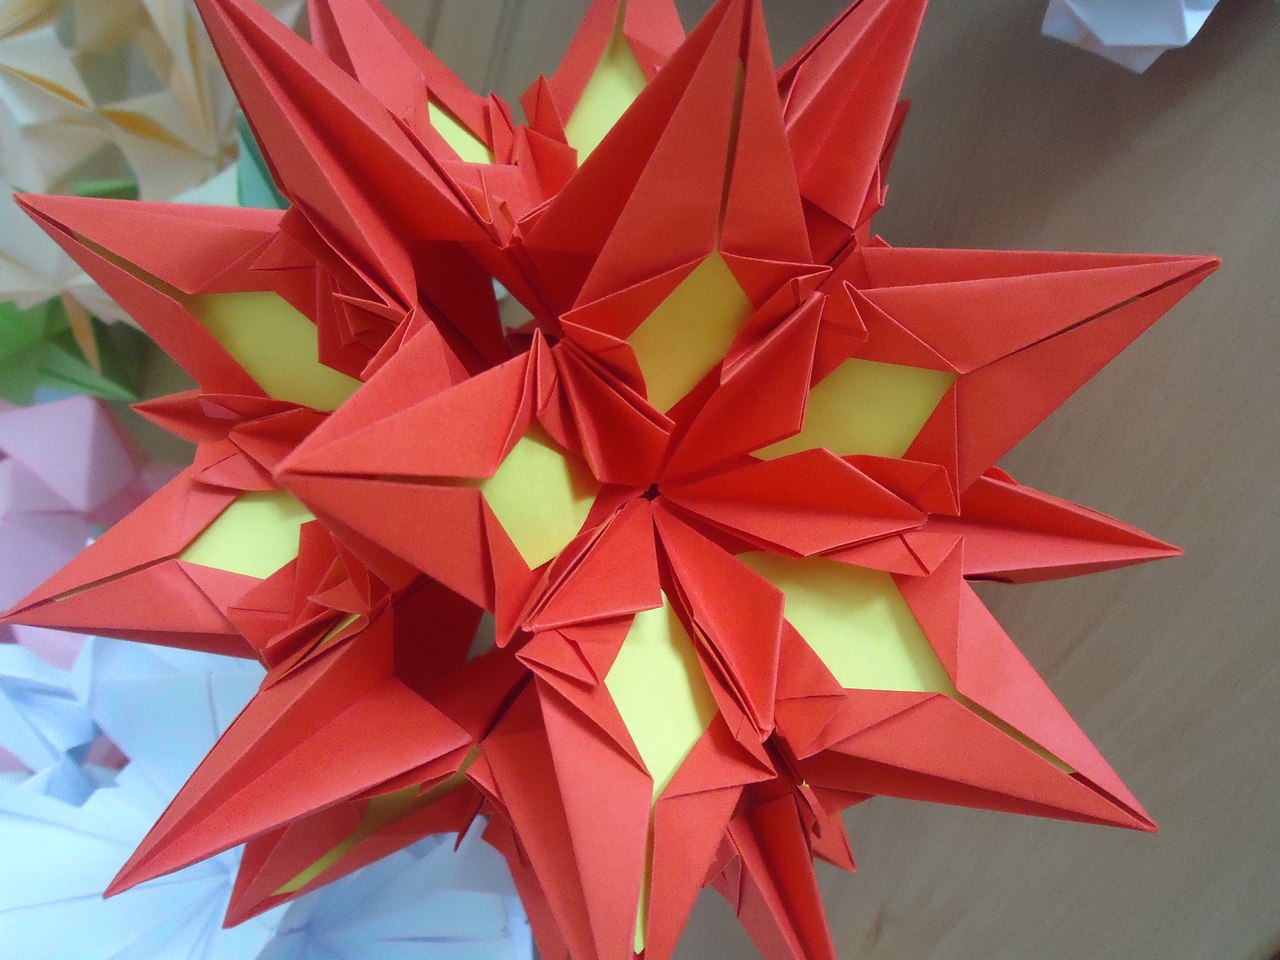 Авторская программа внеурочной деятельности учащихся 7 класса научно-познавательного направления «Модульное оригами»